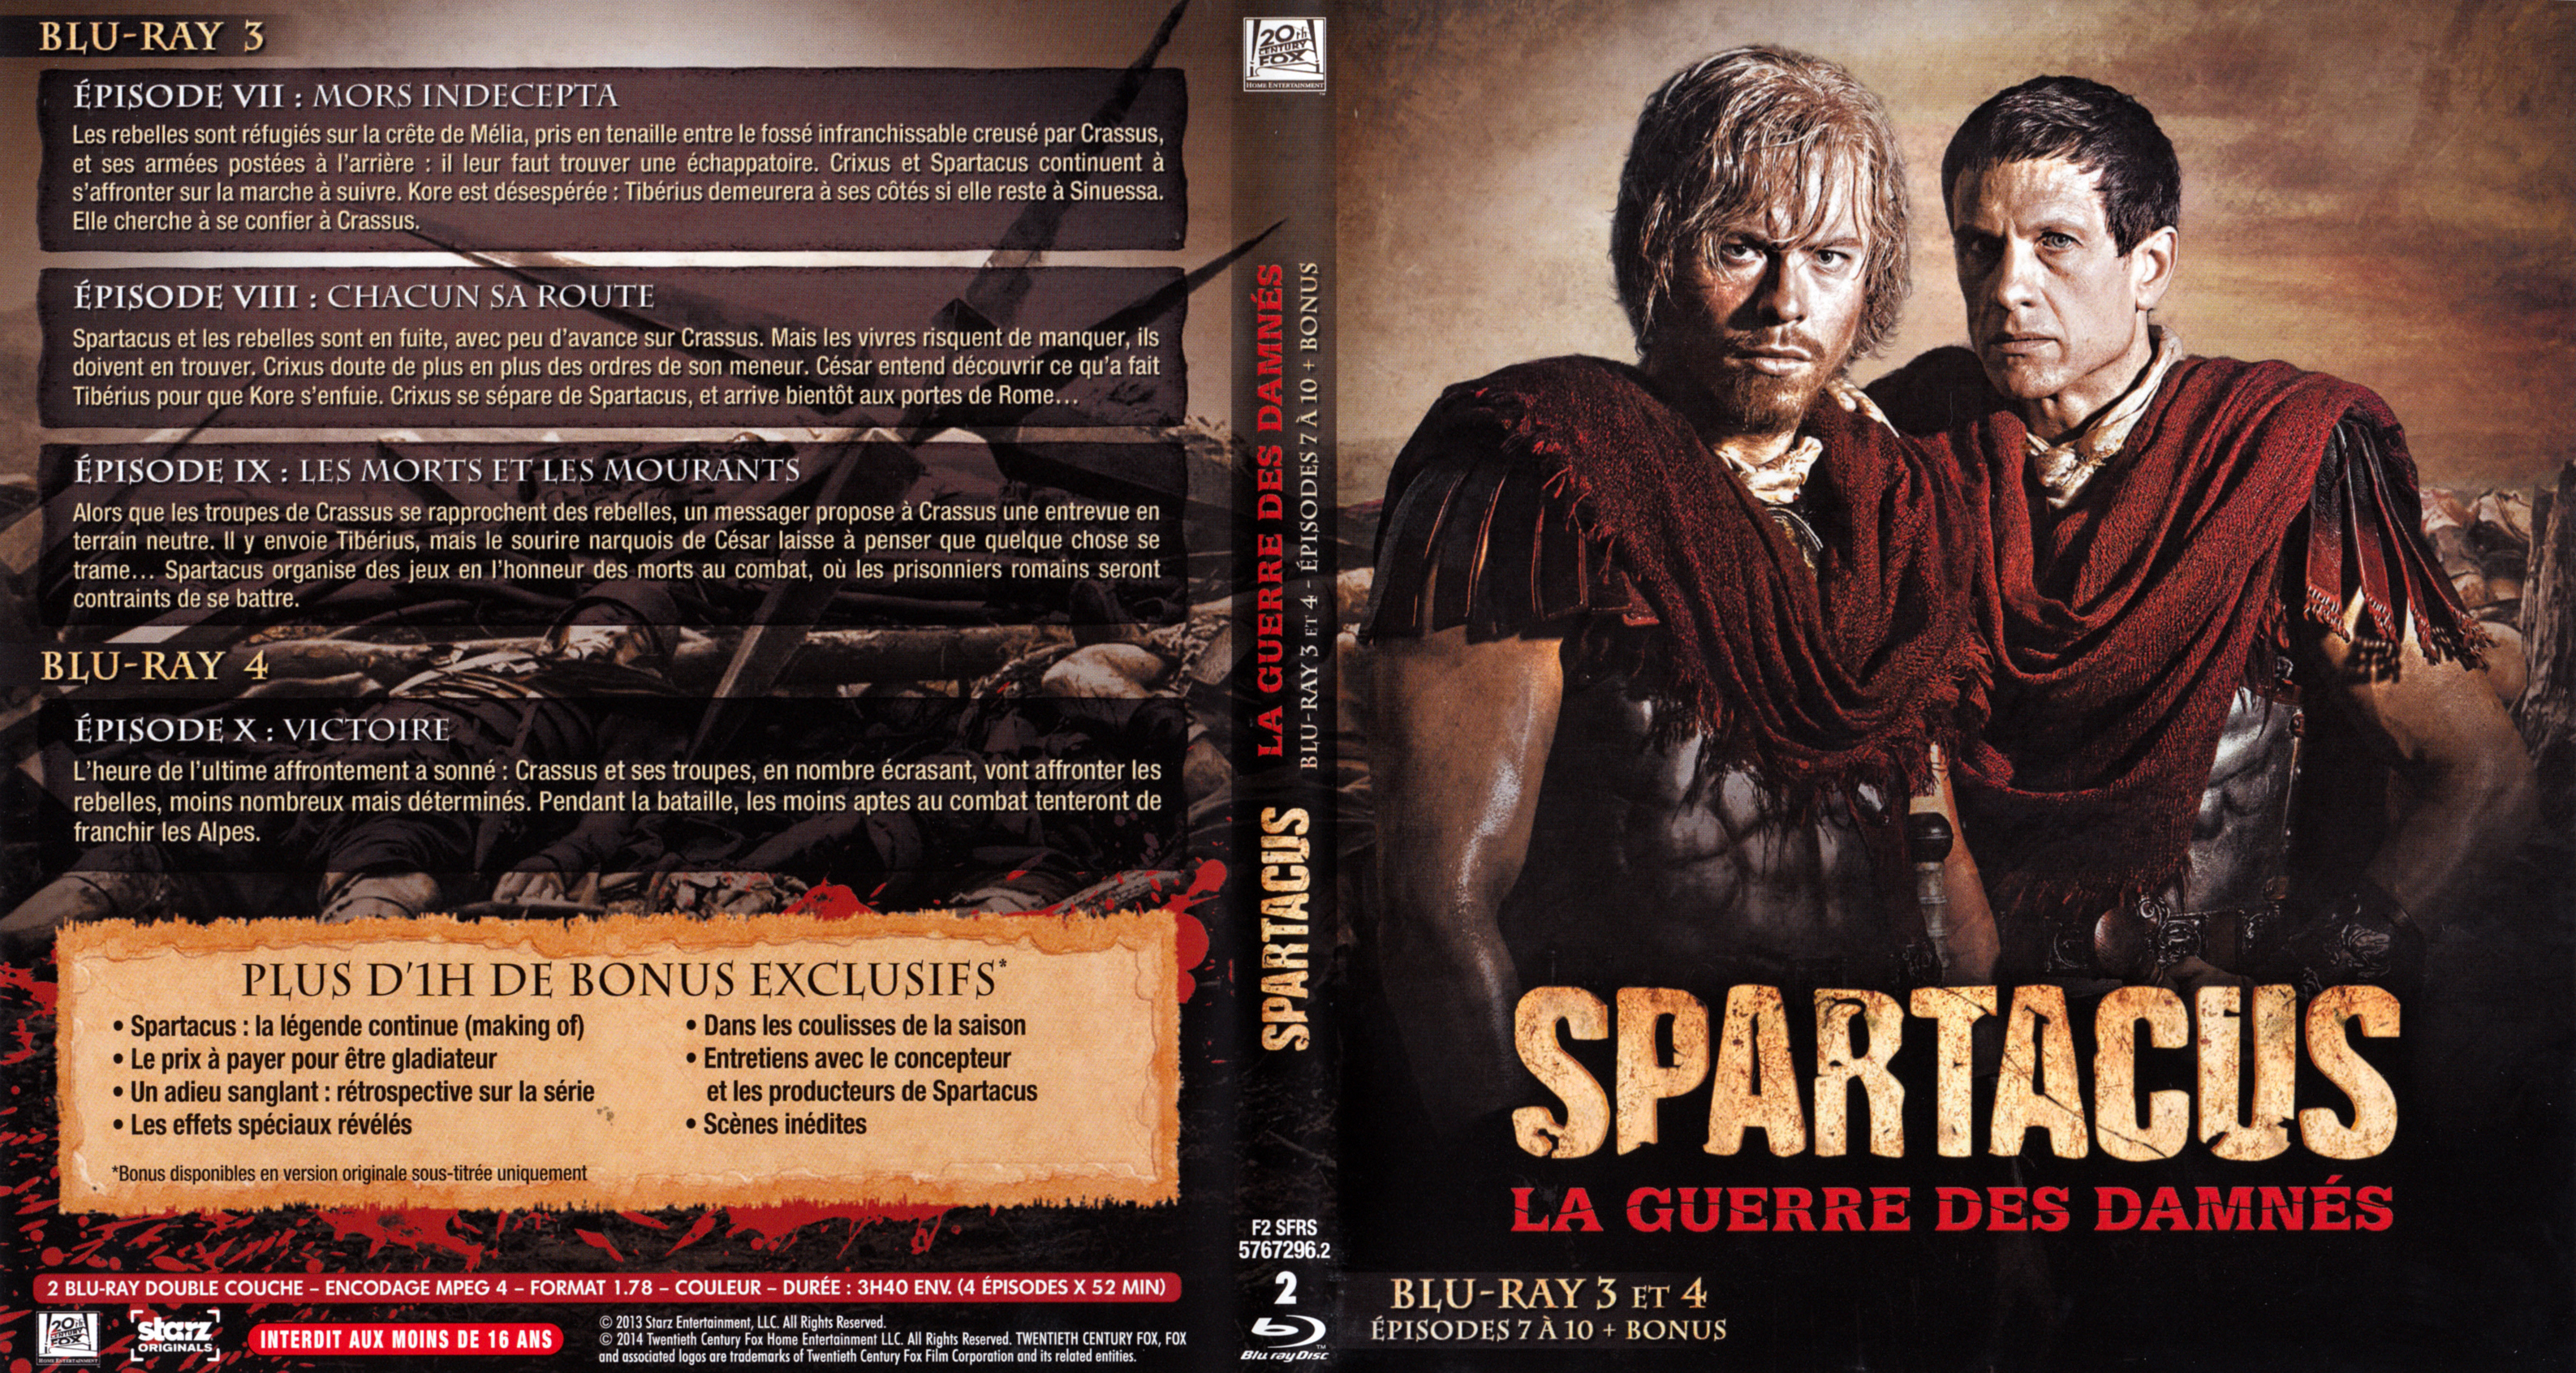 Jaquette DVD Spartacus La guerre des damns Saison 3 DVD 2 (BLU-RAY)